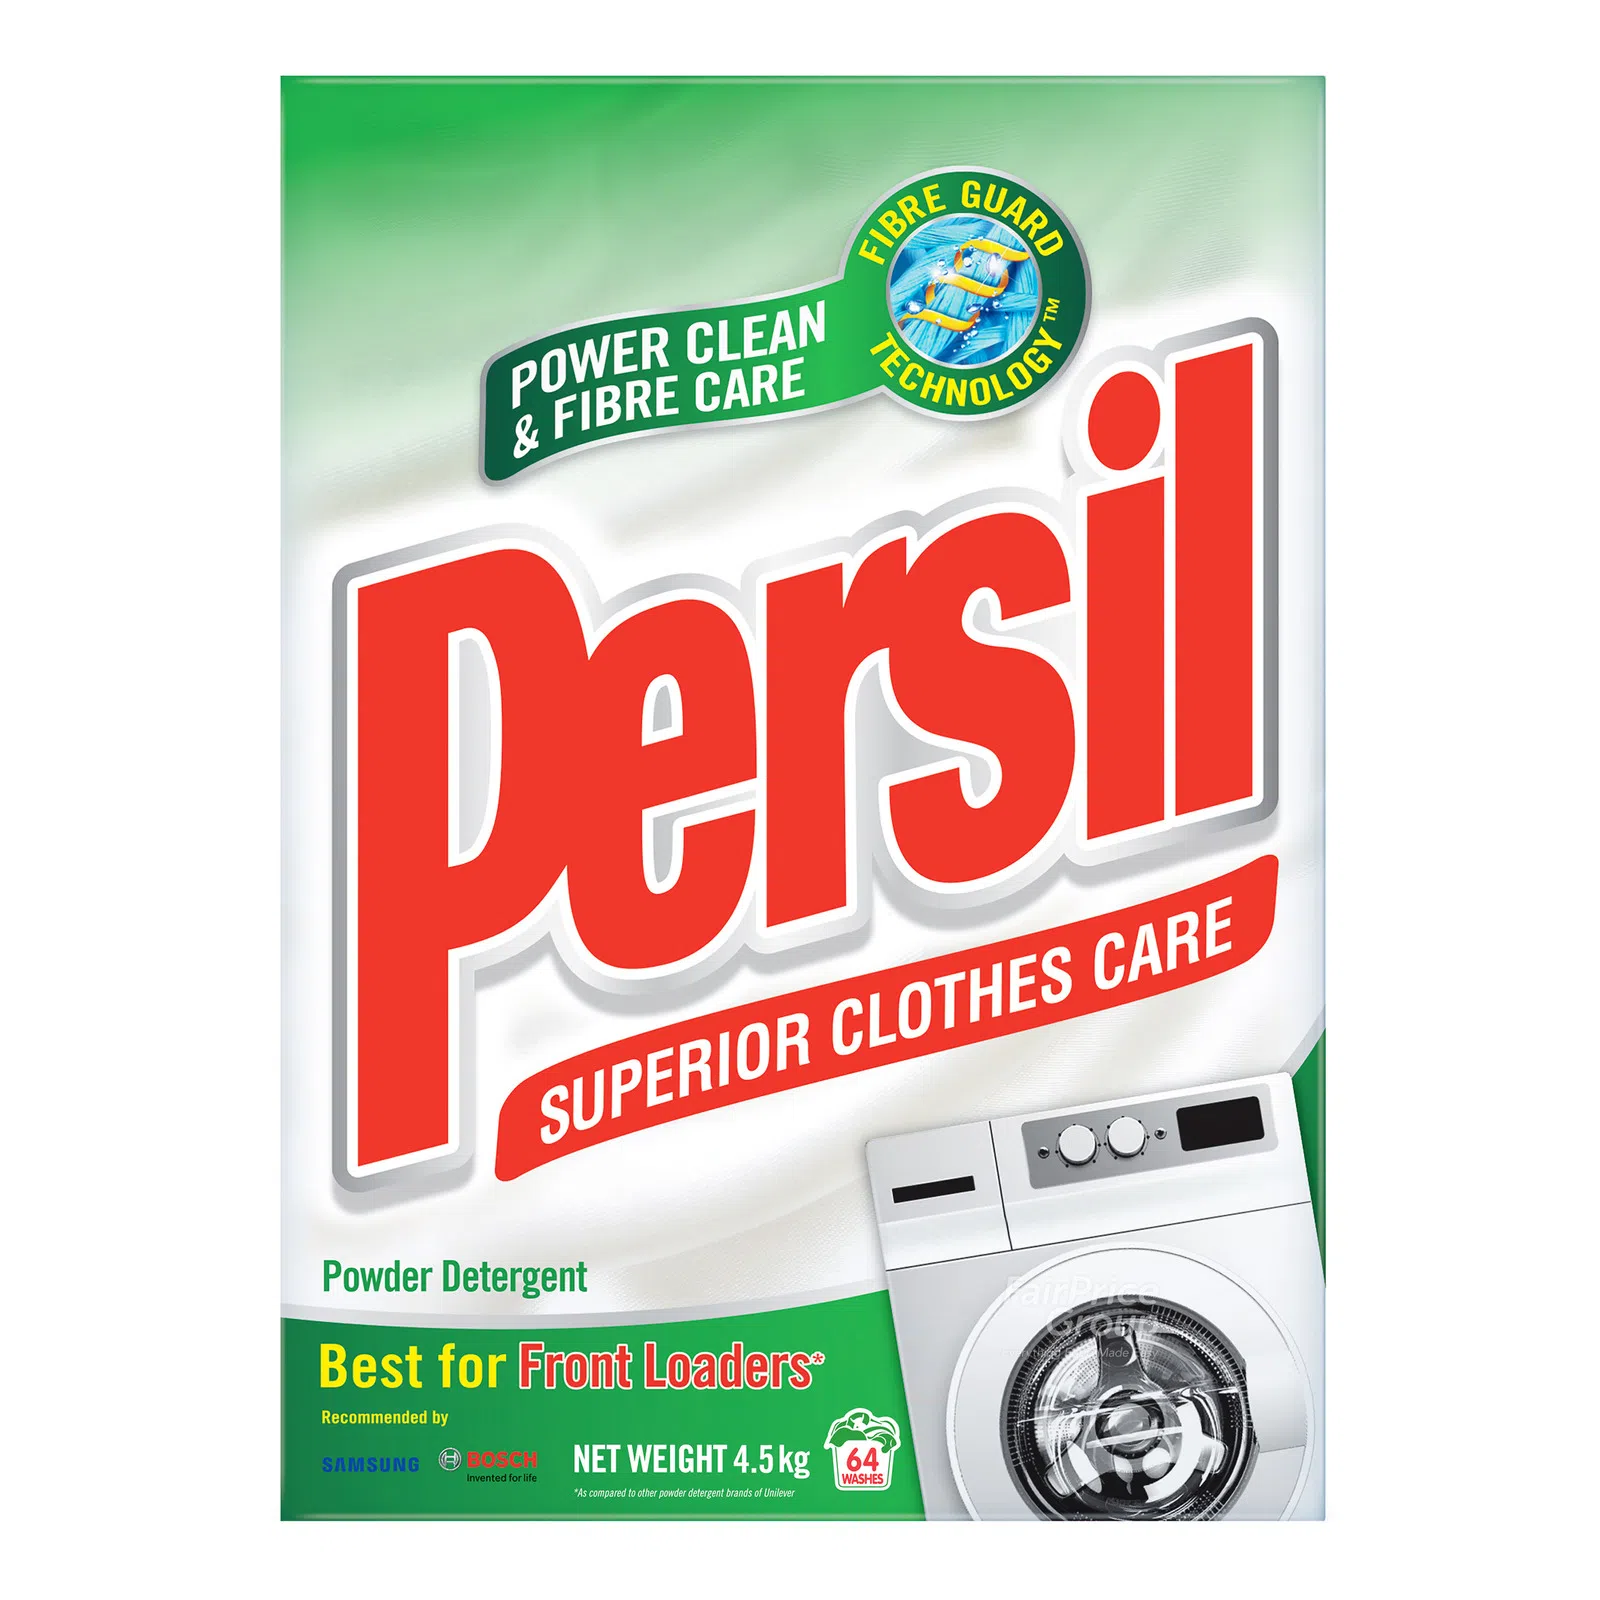 Persil Powder Detergent